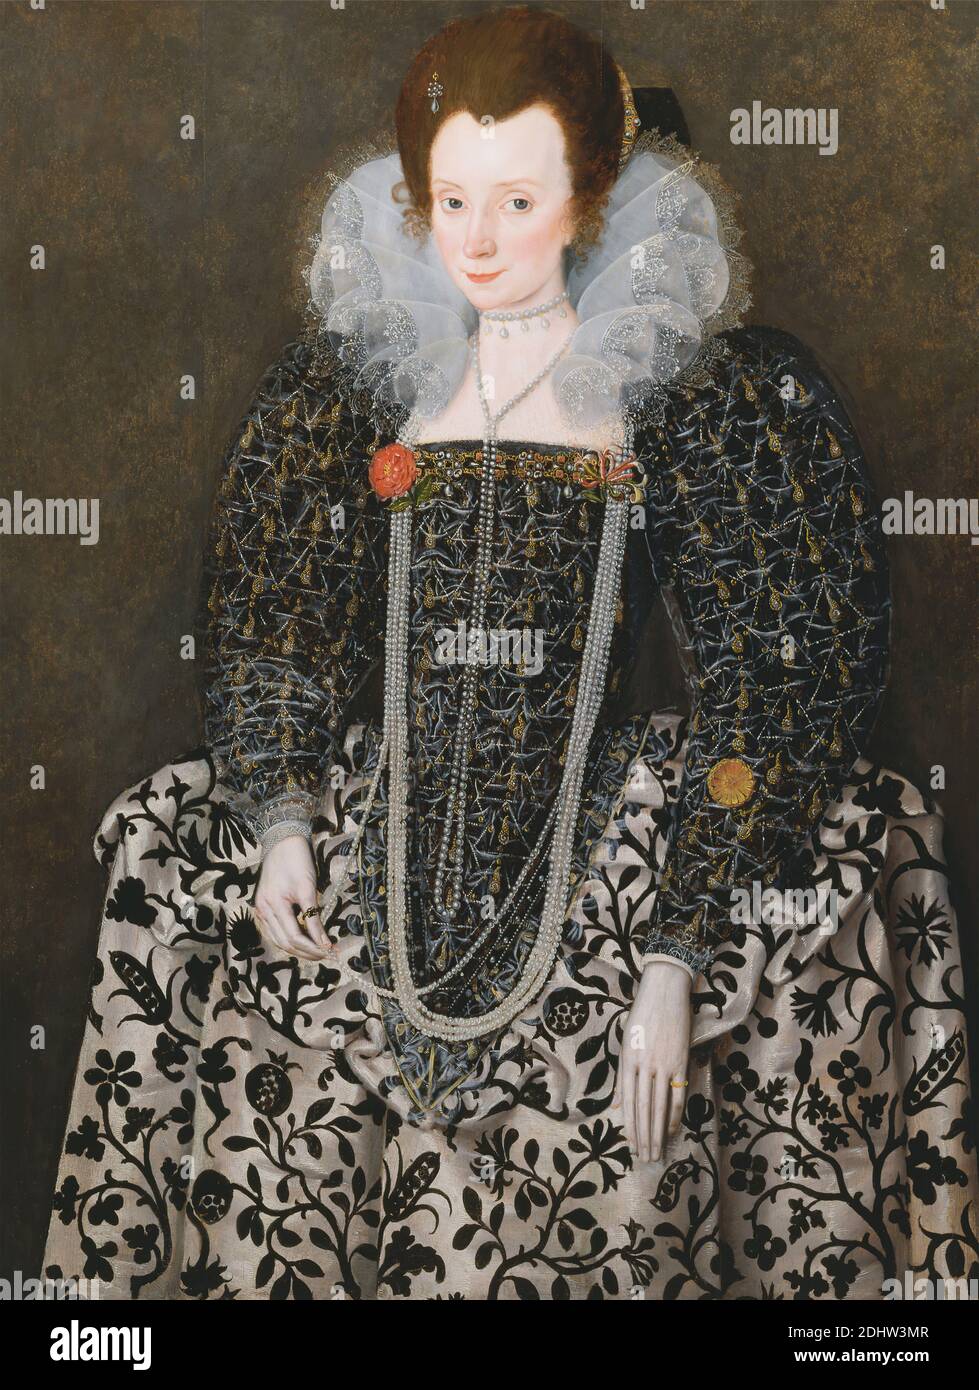 Ritratto di una donna, tradizionalmente identificata come Mary Clopton (nata Waldegrave), di Kentwell Hall, Suffolk, Robert Peake il Vecchio, ca. 1551–1619, inglese, precedentemente attribuito a Marcus Gheeraerts il giovane, 1561–1635, fiammingo, attivo in Gran Bretagna (dal 1568), ca. 1600, olio su pannello, supporto (PTG): 44 3/4 x 34 3/4 pollici (113.7 x 88.3 cm), mais, costume, elisabettiano, perle, melograno, ritratto, rose (pianta), Tudor, donna Foto Stock